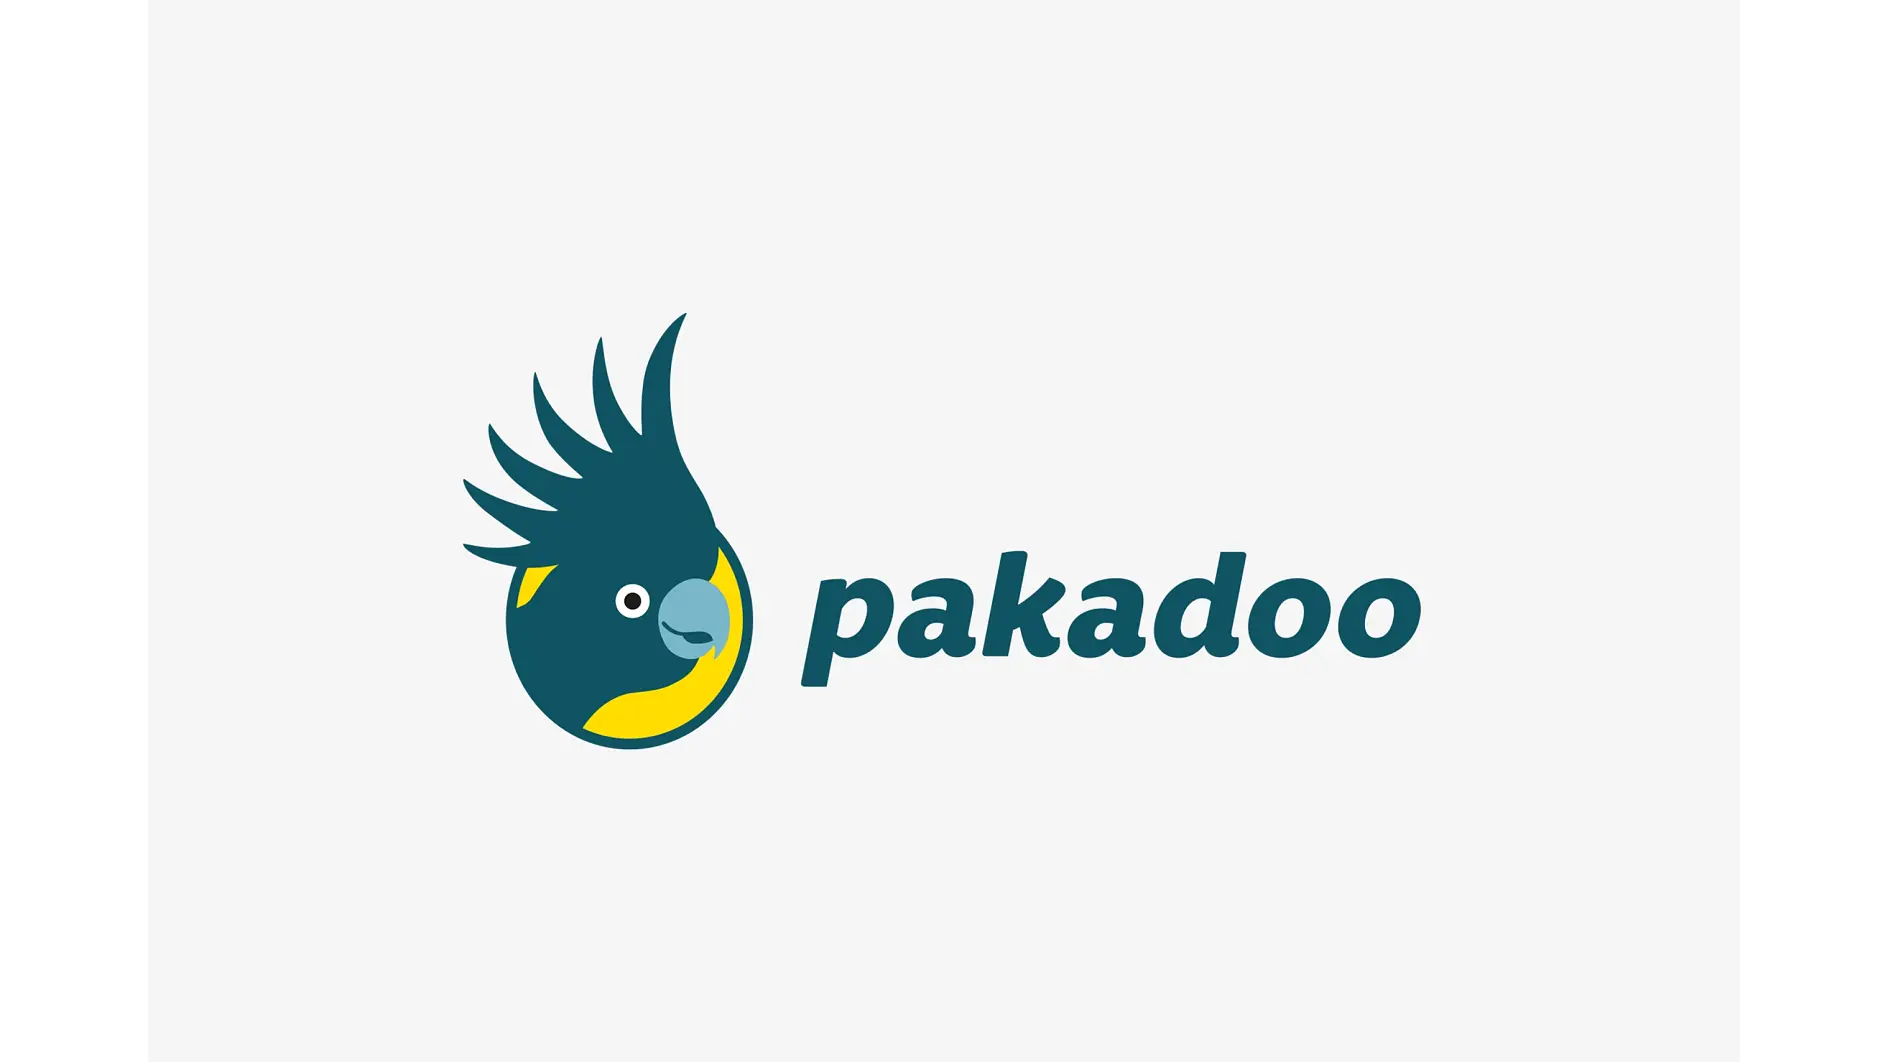 Bestellen Sie mit pakadoo bequem Ihre persönlichen Pakete an Ihren Arbeitsplatz.